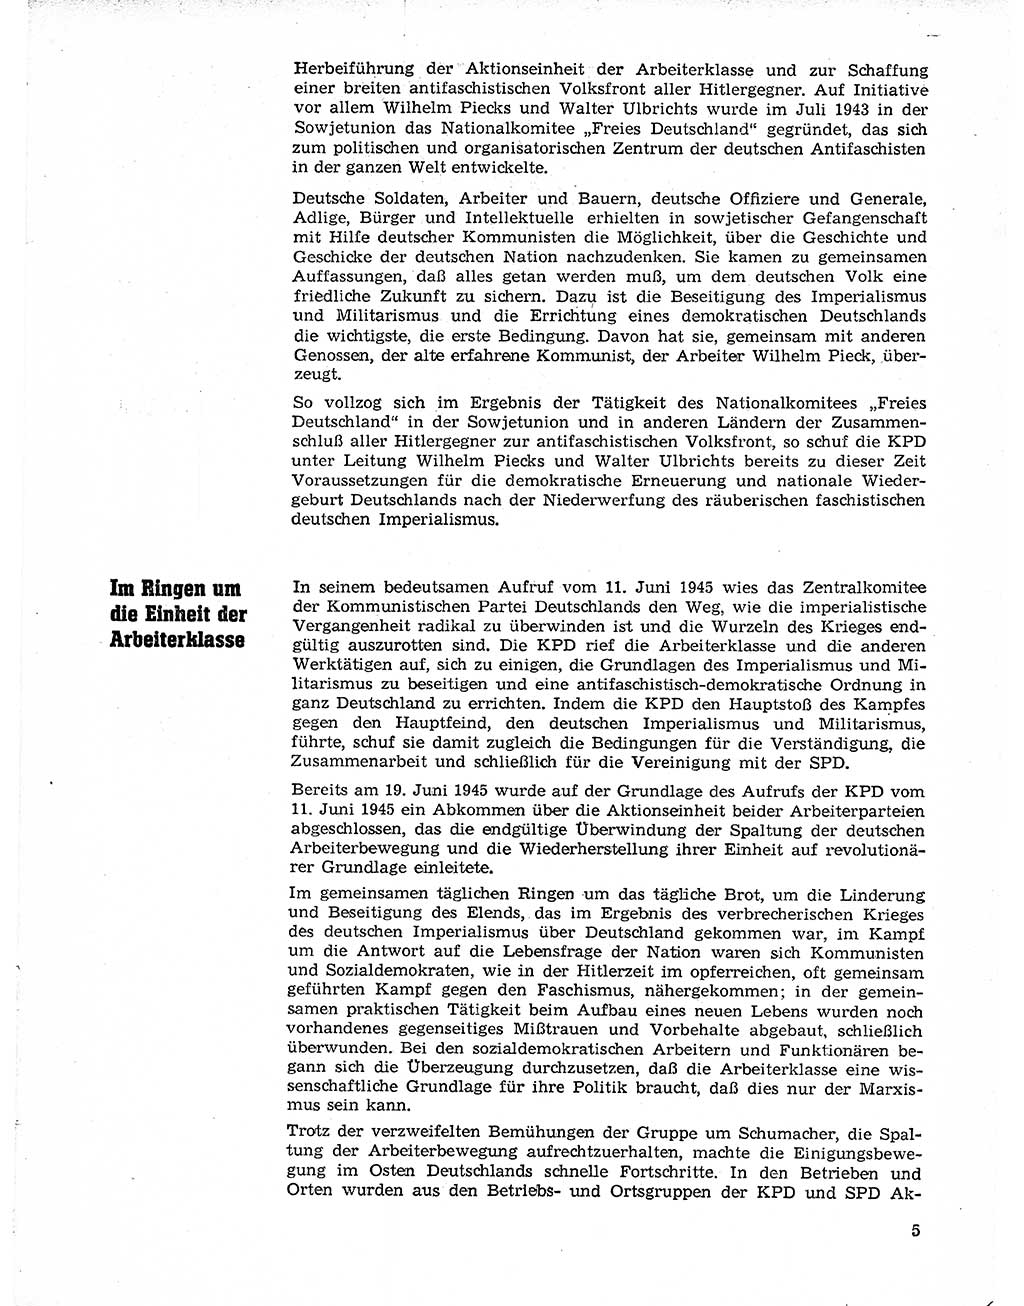 Neuer Weg (NW), Organ des Zentralkomitees (ZK) der SED (Sozialistische Einheitspartei Deutschlands) fÃ¼r Fragen des Parteilebens, 21. Jahrgang [Deutsche Demokratische Republik (DDR)] 1966, Seite 5 (NW ZK SED DDR 1966, S. 5)